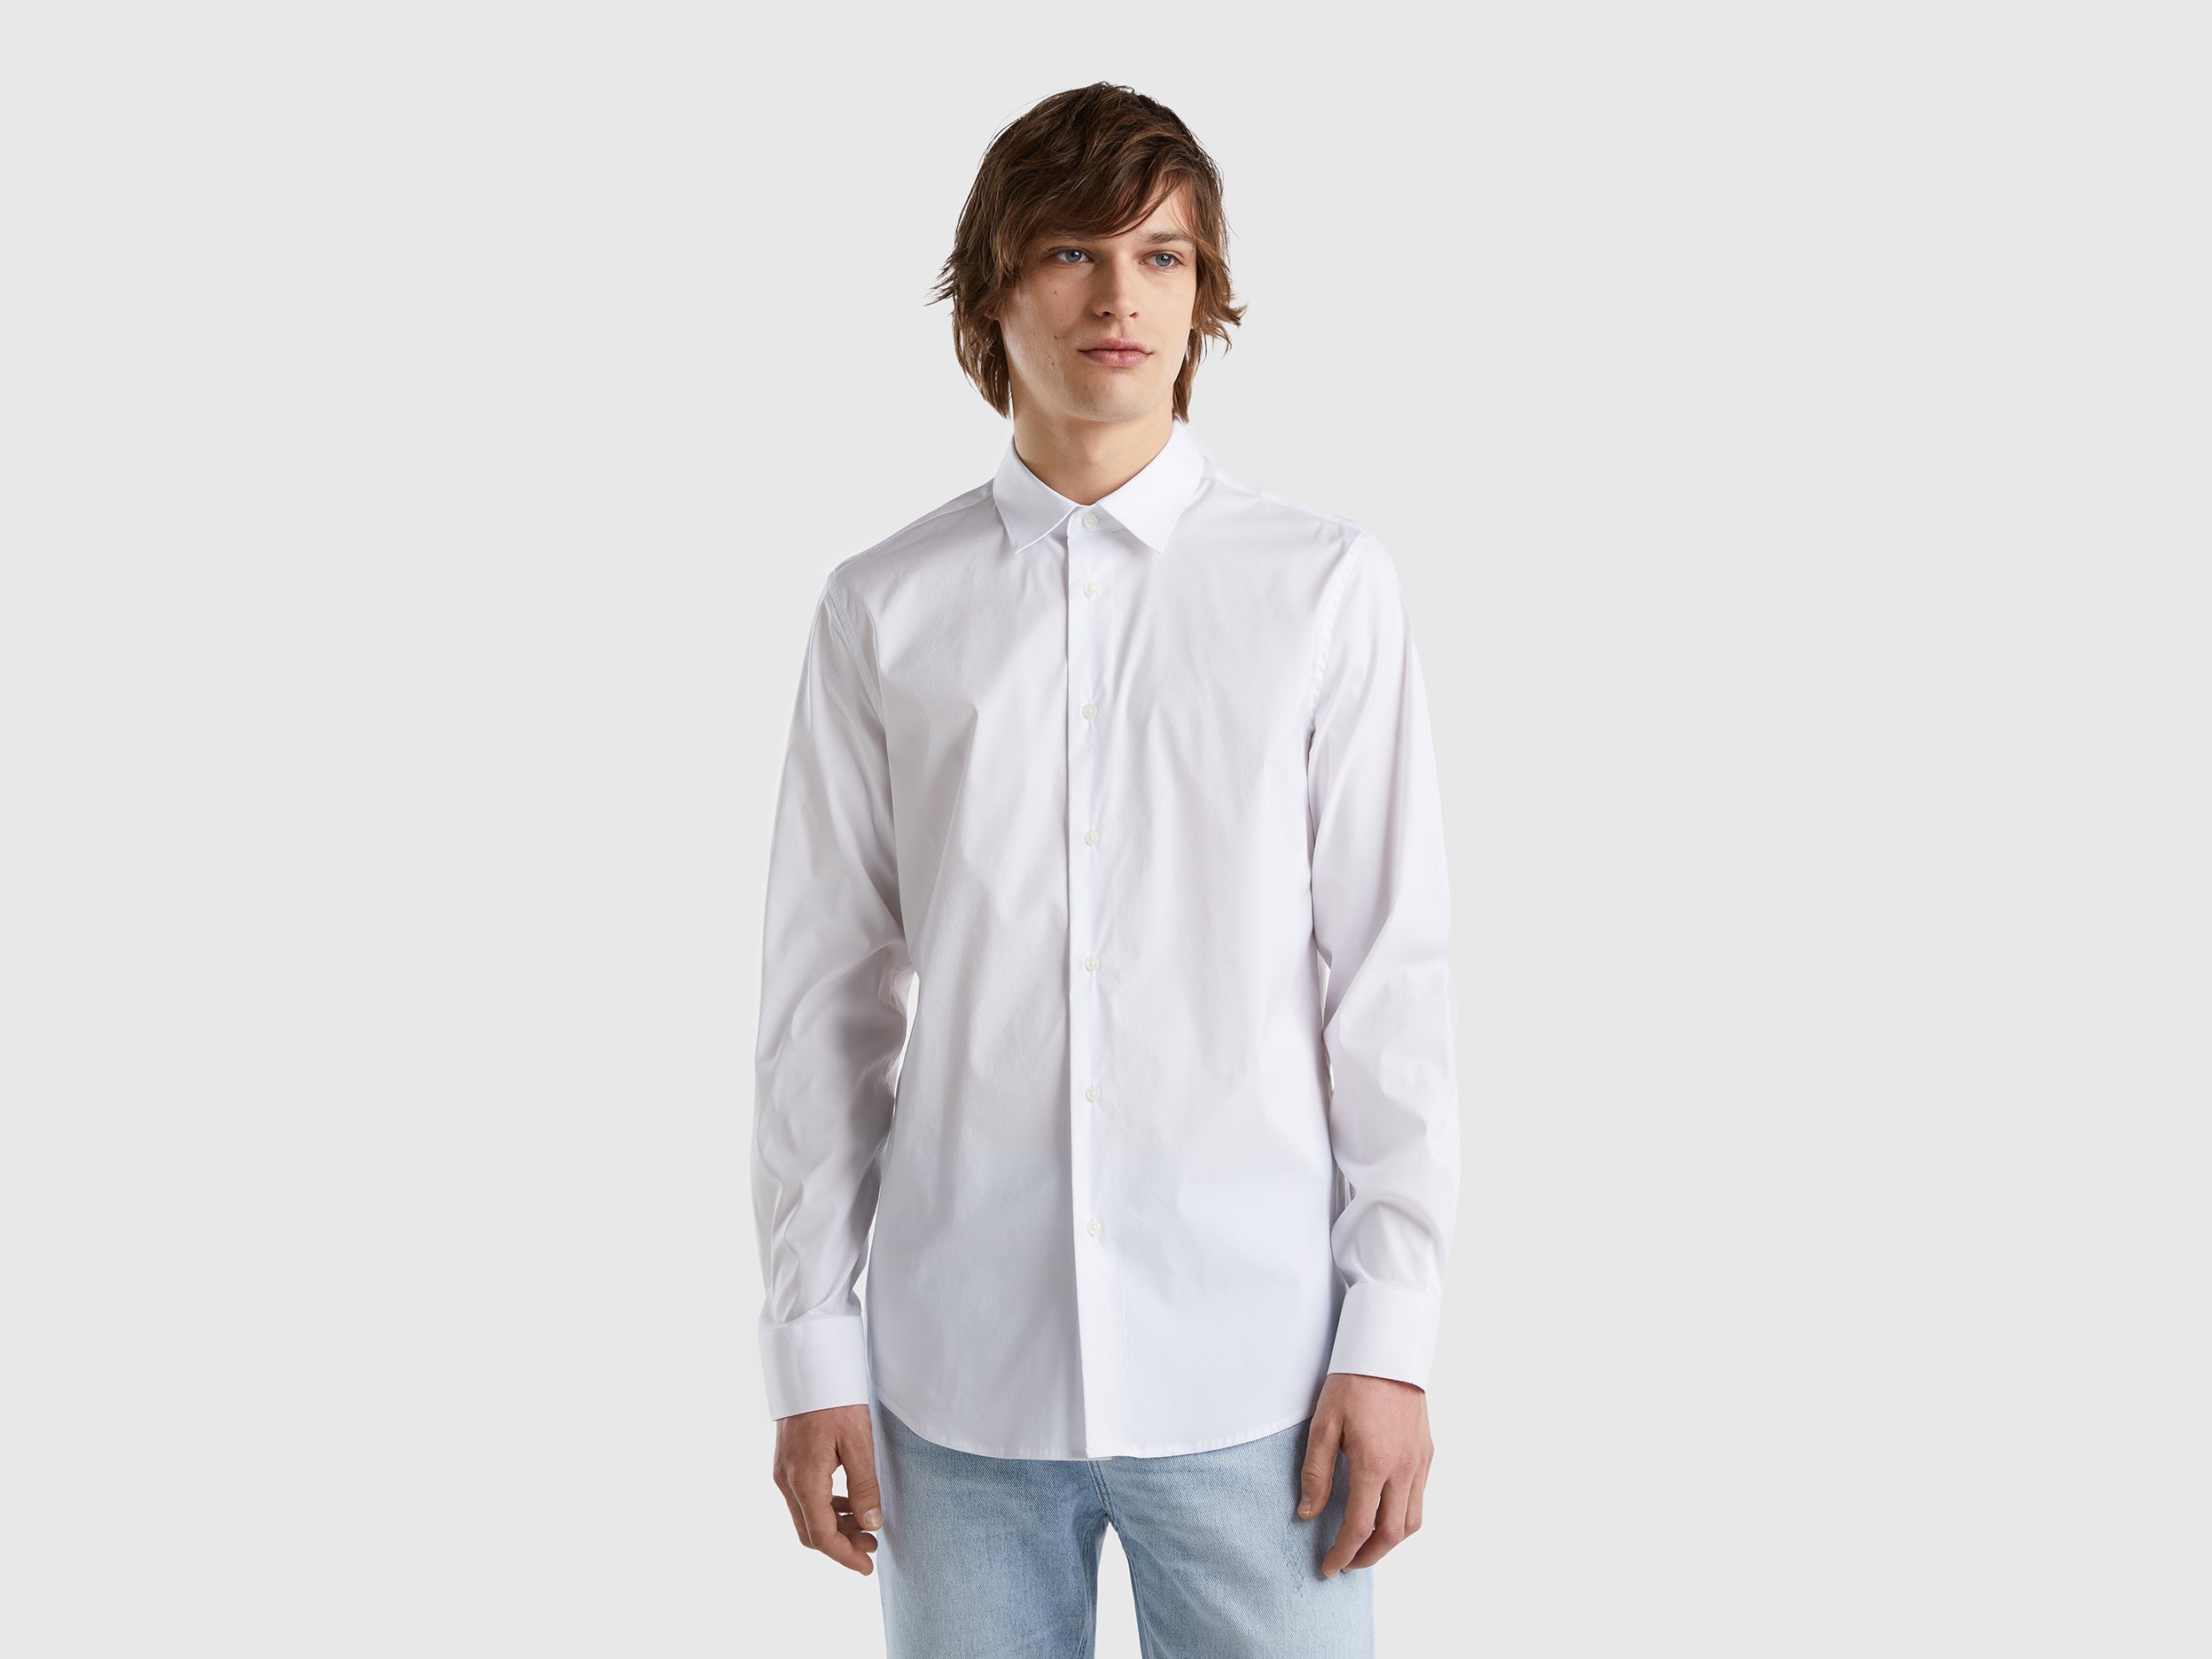 Benetton, Solid Color Slim Fit Shirt, size XL, White, Men